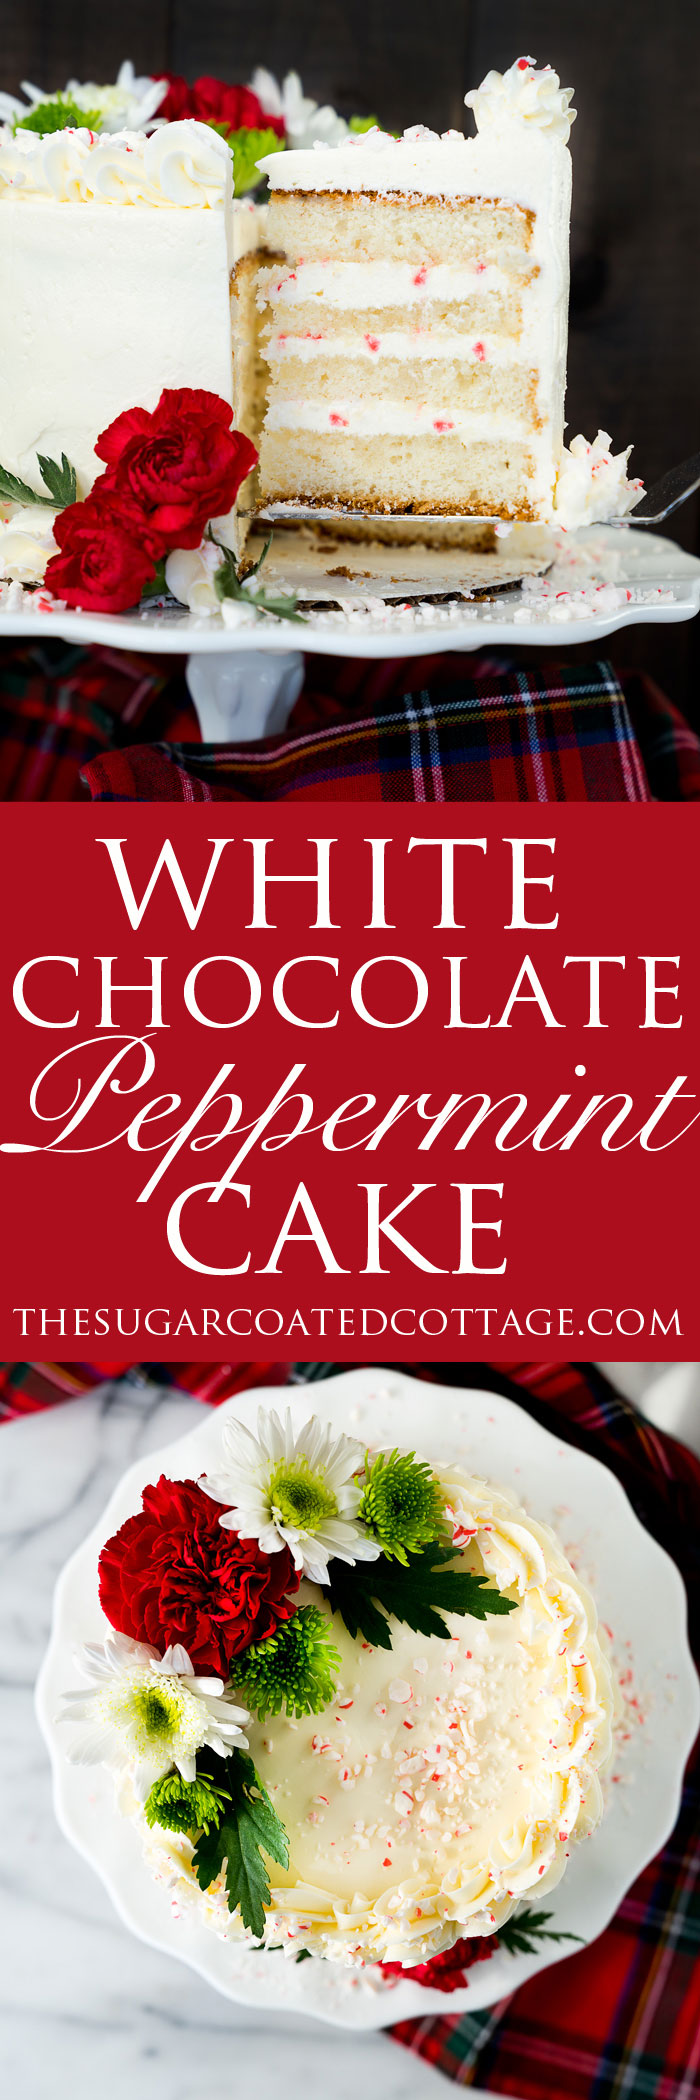 White Chocolate Peppermint Cake recipe. Lush white chocolate and cool, crisp peppermint make for a wonderfully delightful cake recipe. | thesugarcoatedcottage.com